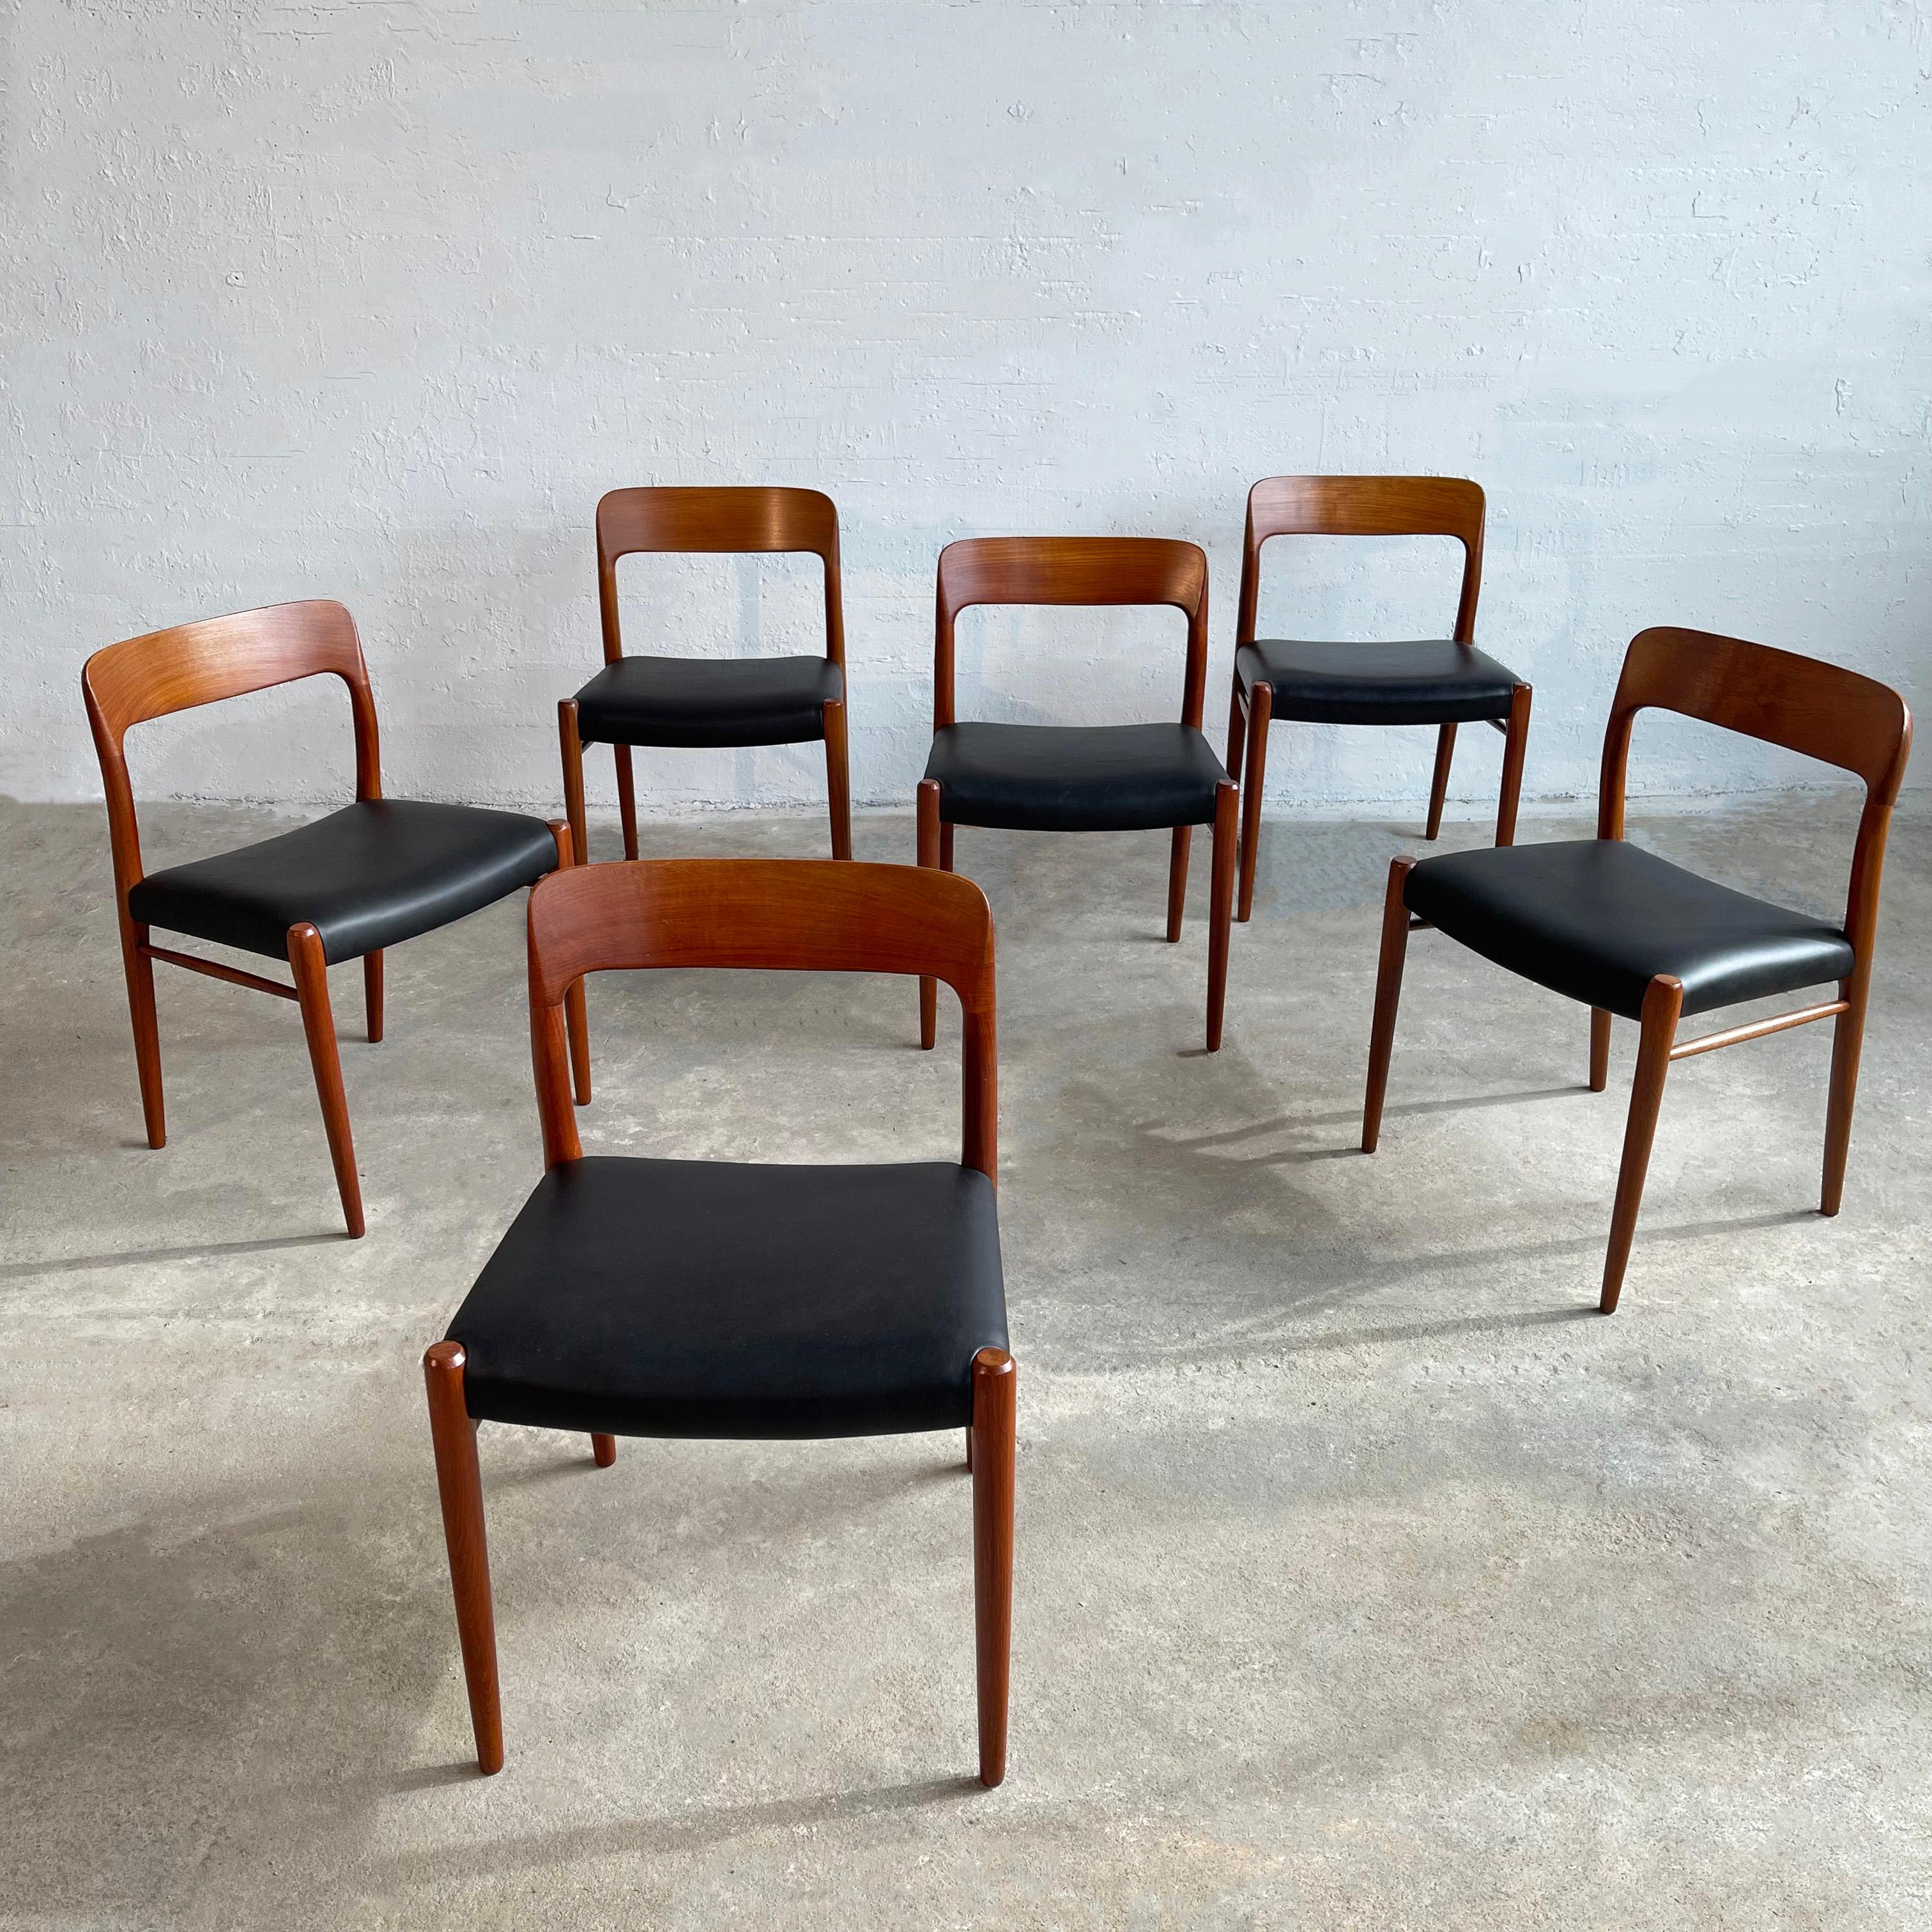 Ensemble de six chaises d'appoint en teck, modèle 75, de style moderne Scandinavian, par Niels O Møller pour J.L.A. Møllers Møbelfabrik présentent des cadres en teck couleur miel nouvellement finis et des sièges en cuir noir nouvellement rembourrés